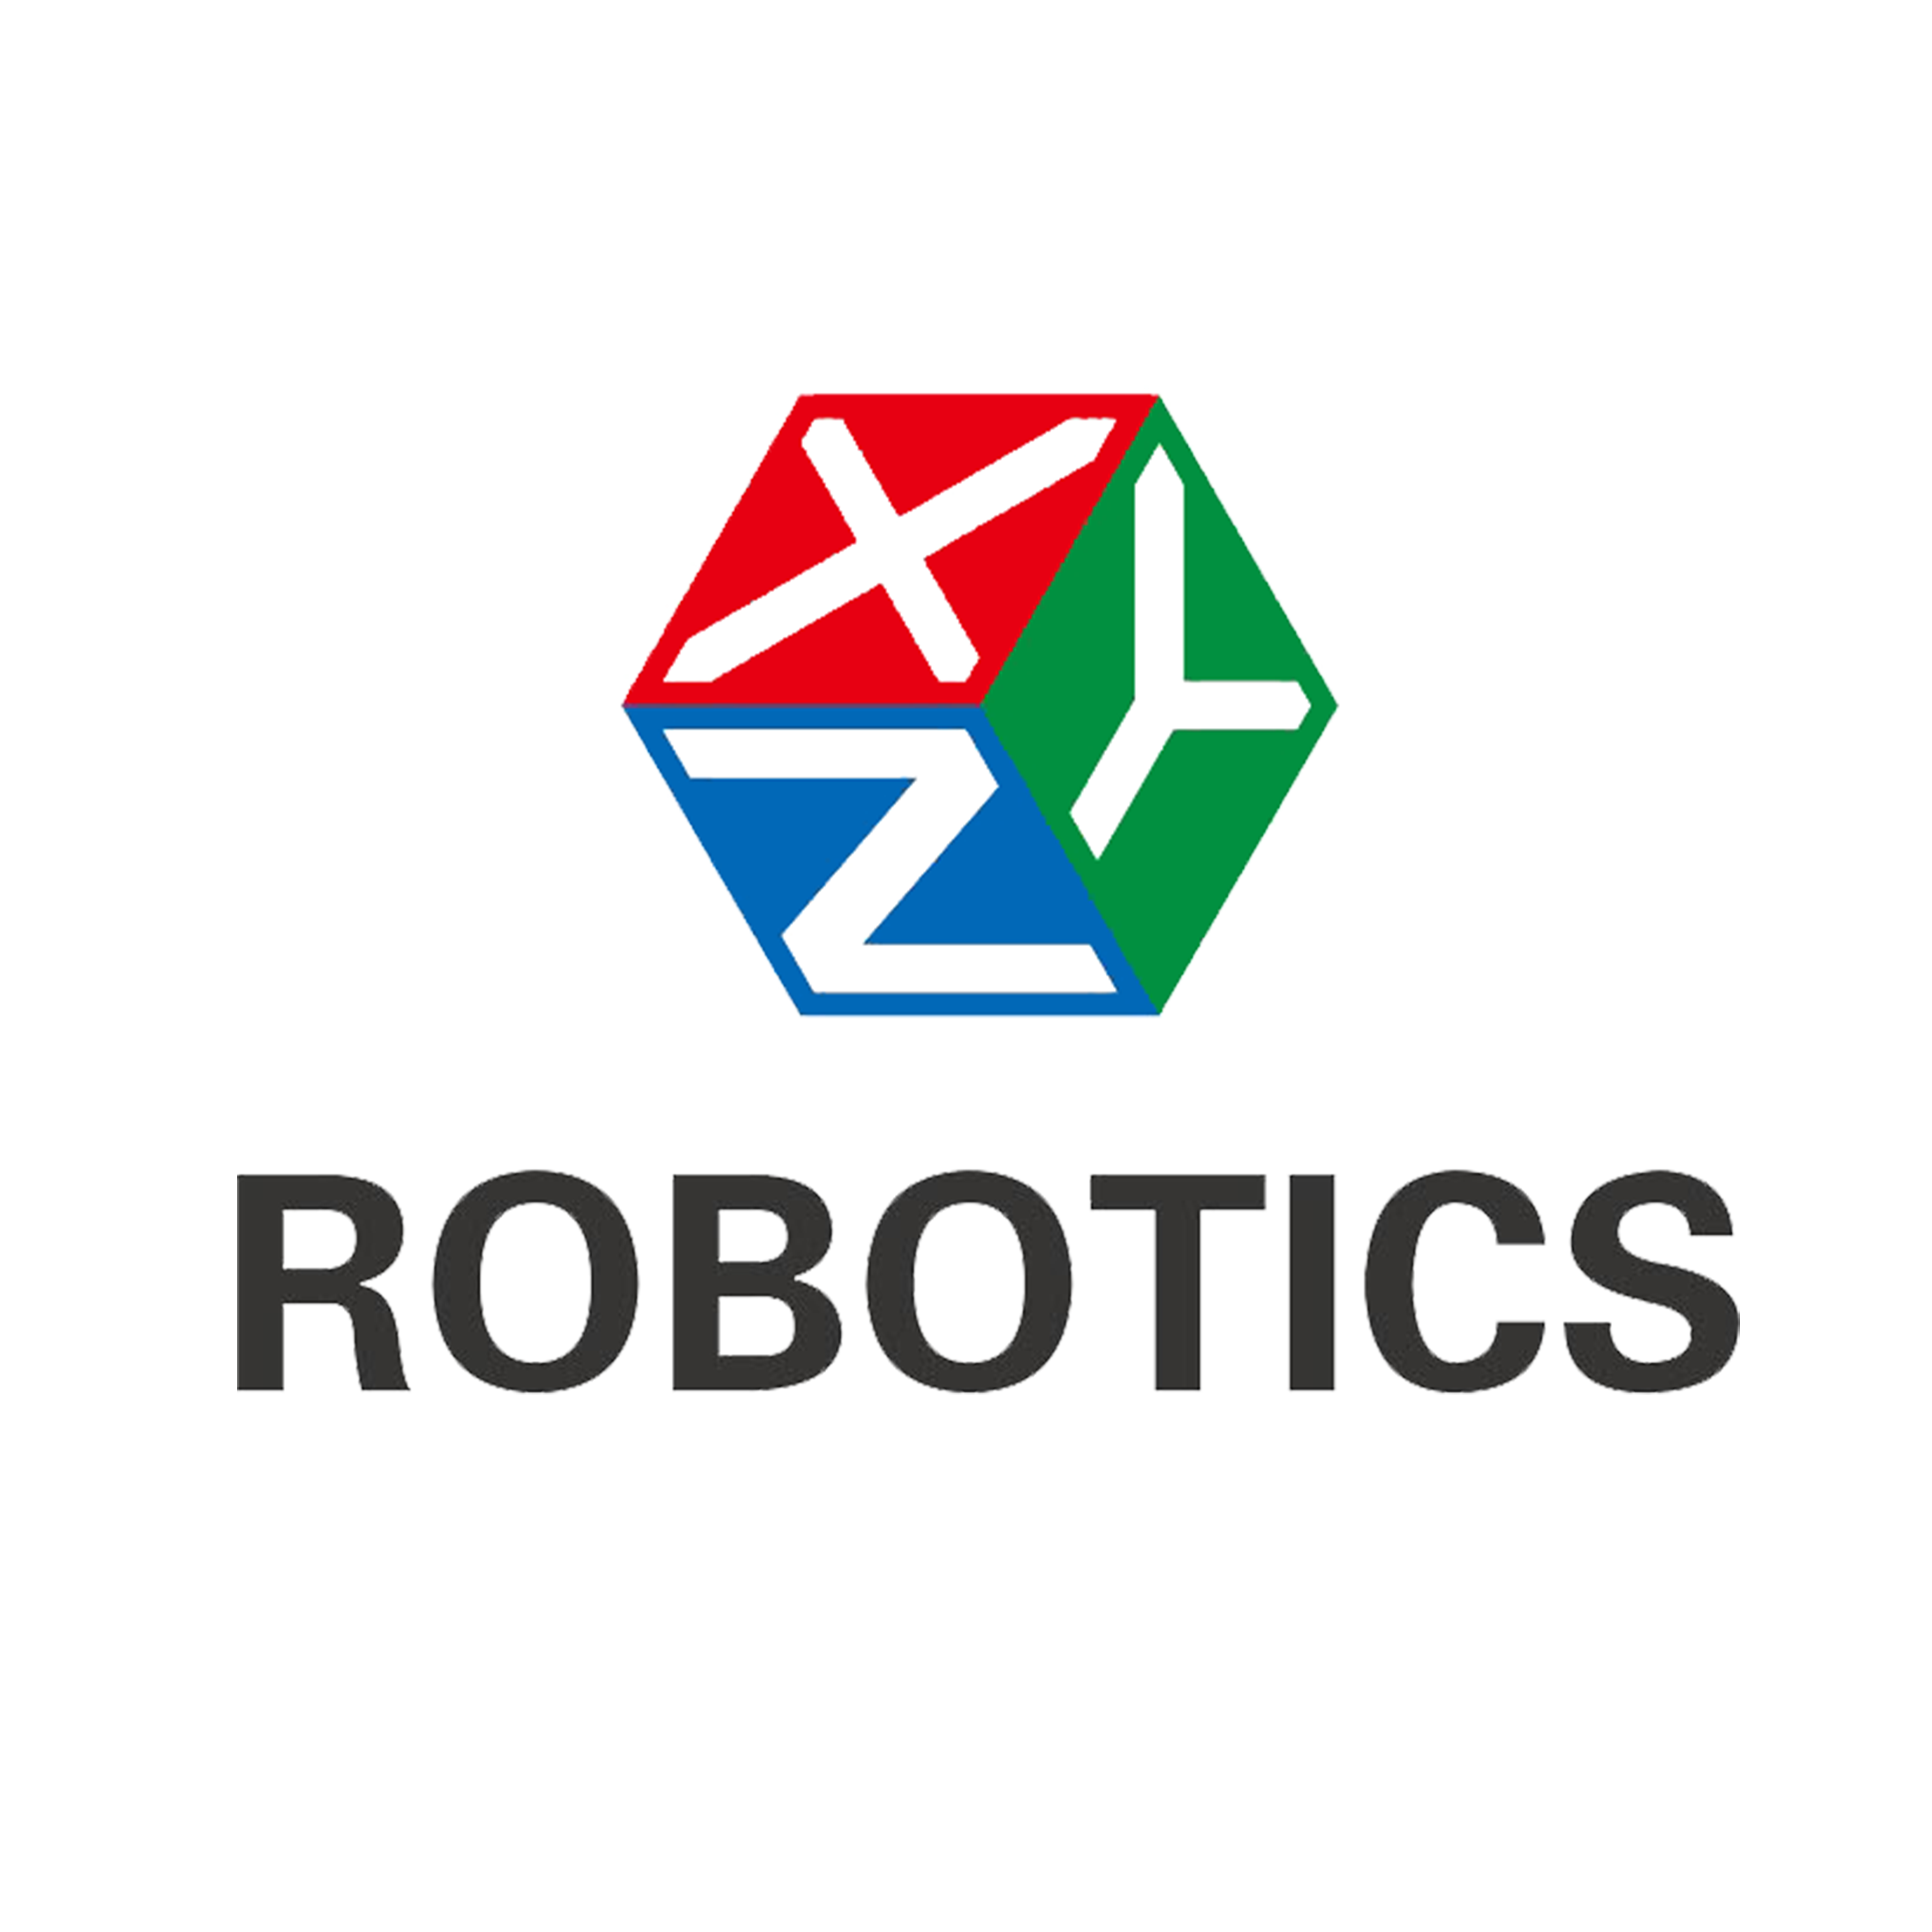 星猿哲（XYZ Robotics）致力于提供工业及物流业视觉拣选解决方案，以仓储市场为例，拣选工作人工替代的经济规模达千亿元。公司已与国内主要电商物流进行接洽，已获得明确的产品需求。创始人曾荣获ICRA&IROS（全球规模最大机器人学术会议）全会最佳论文奖，并作为技术架构总负责率领MIT-Princeton联队于2015-2017连续三年参加亚马逊机器人挑战赛（Amazon Robotics Challenge）均位居大赛前三甲，已获种子轮投资。